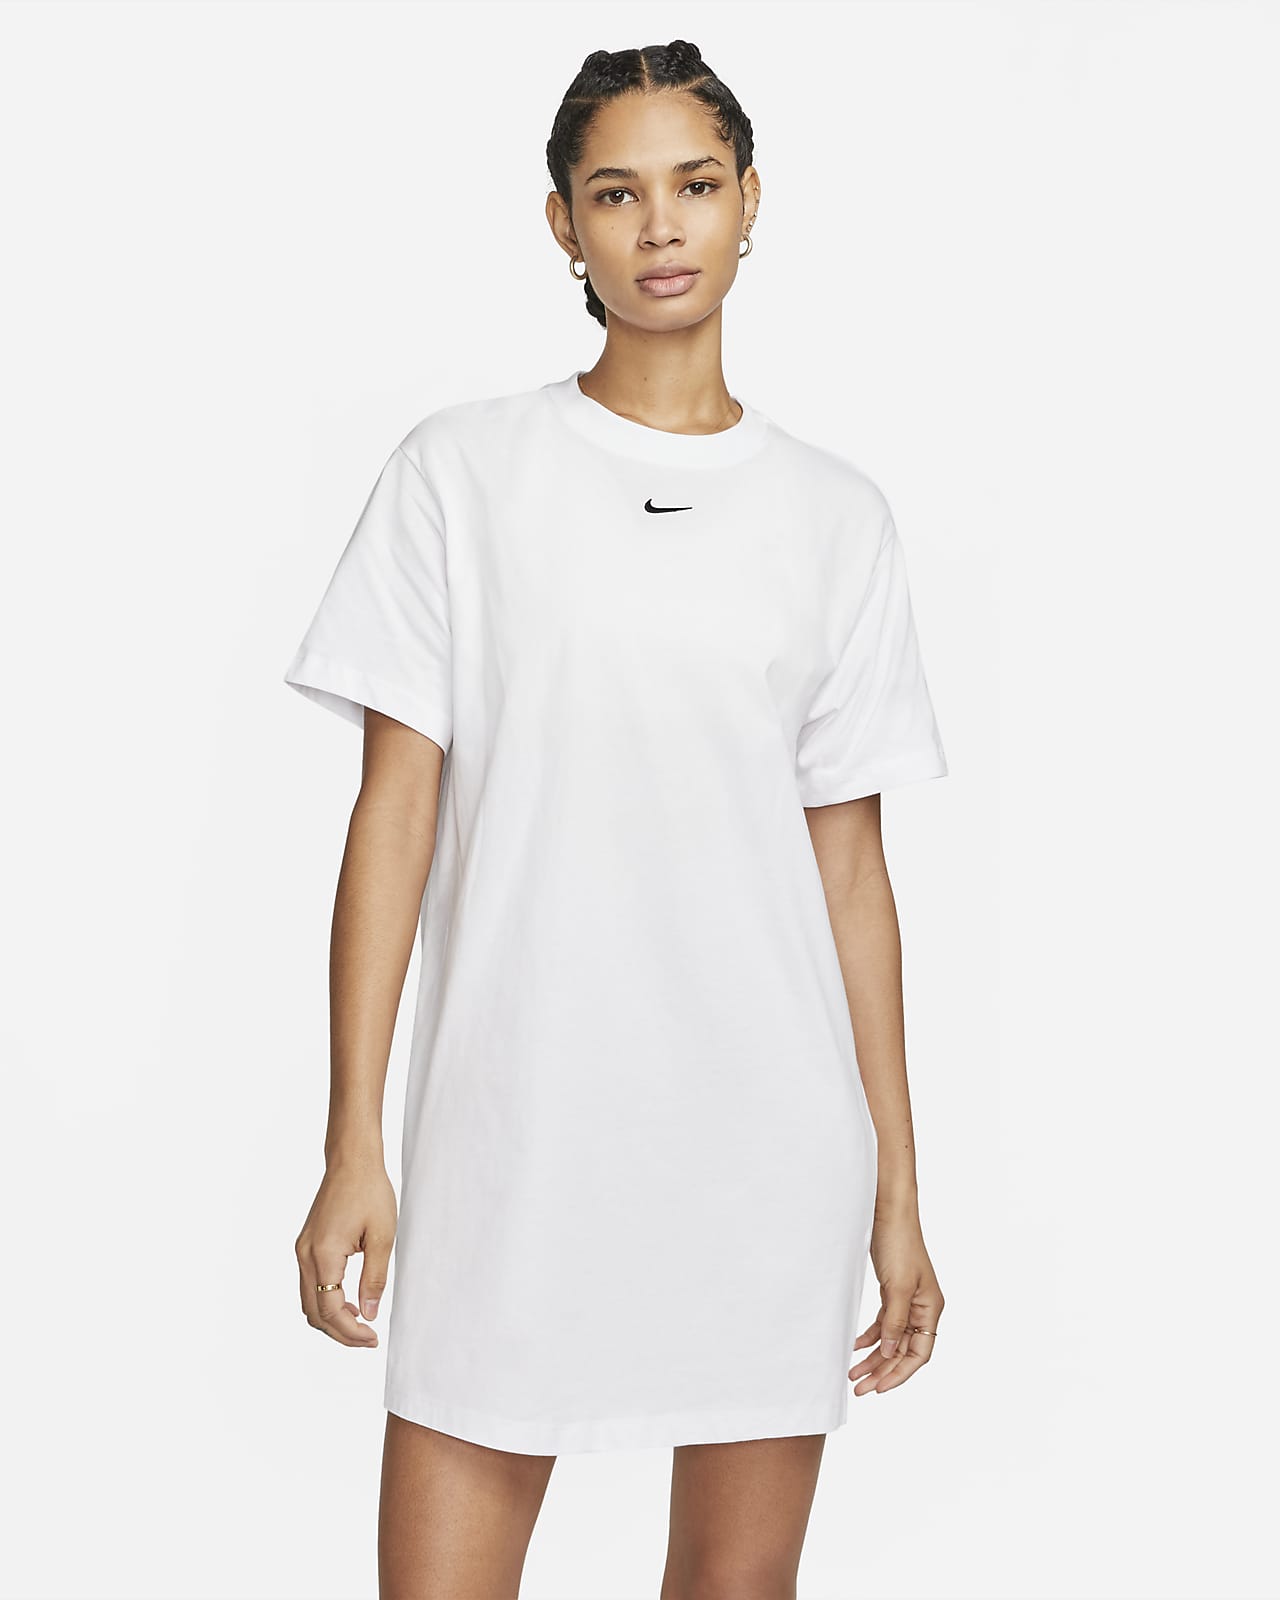 Nike Women's Short-Sleeve T-Shirt Dress.